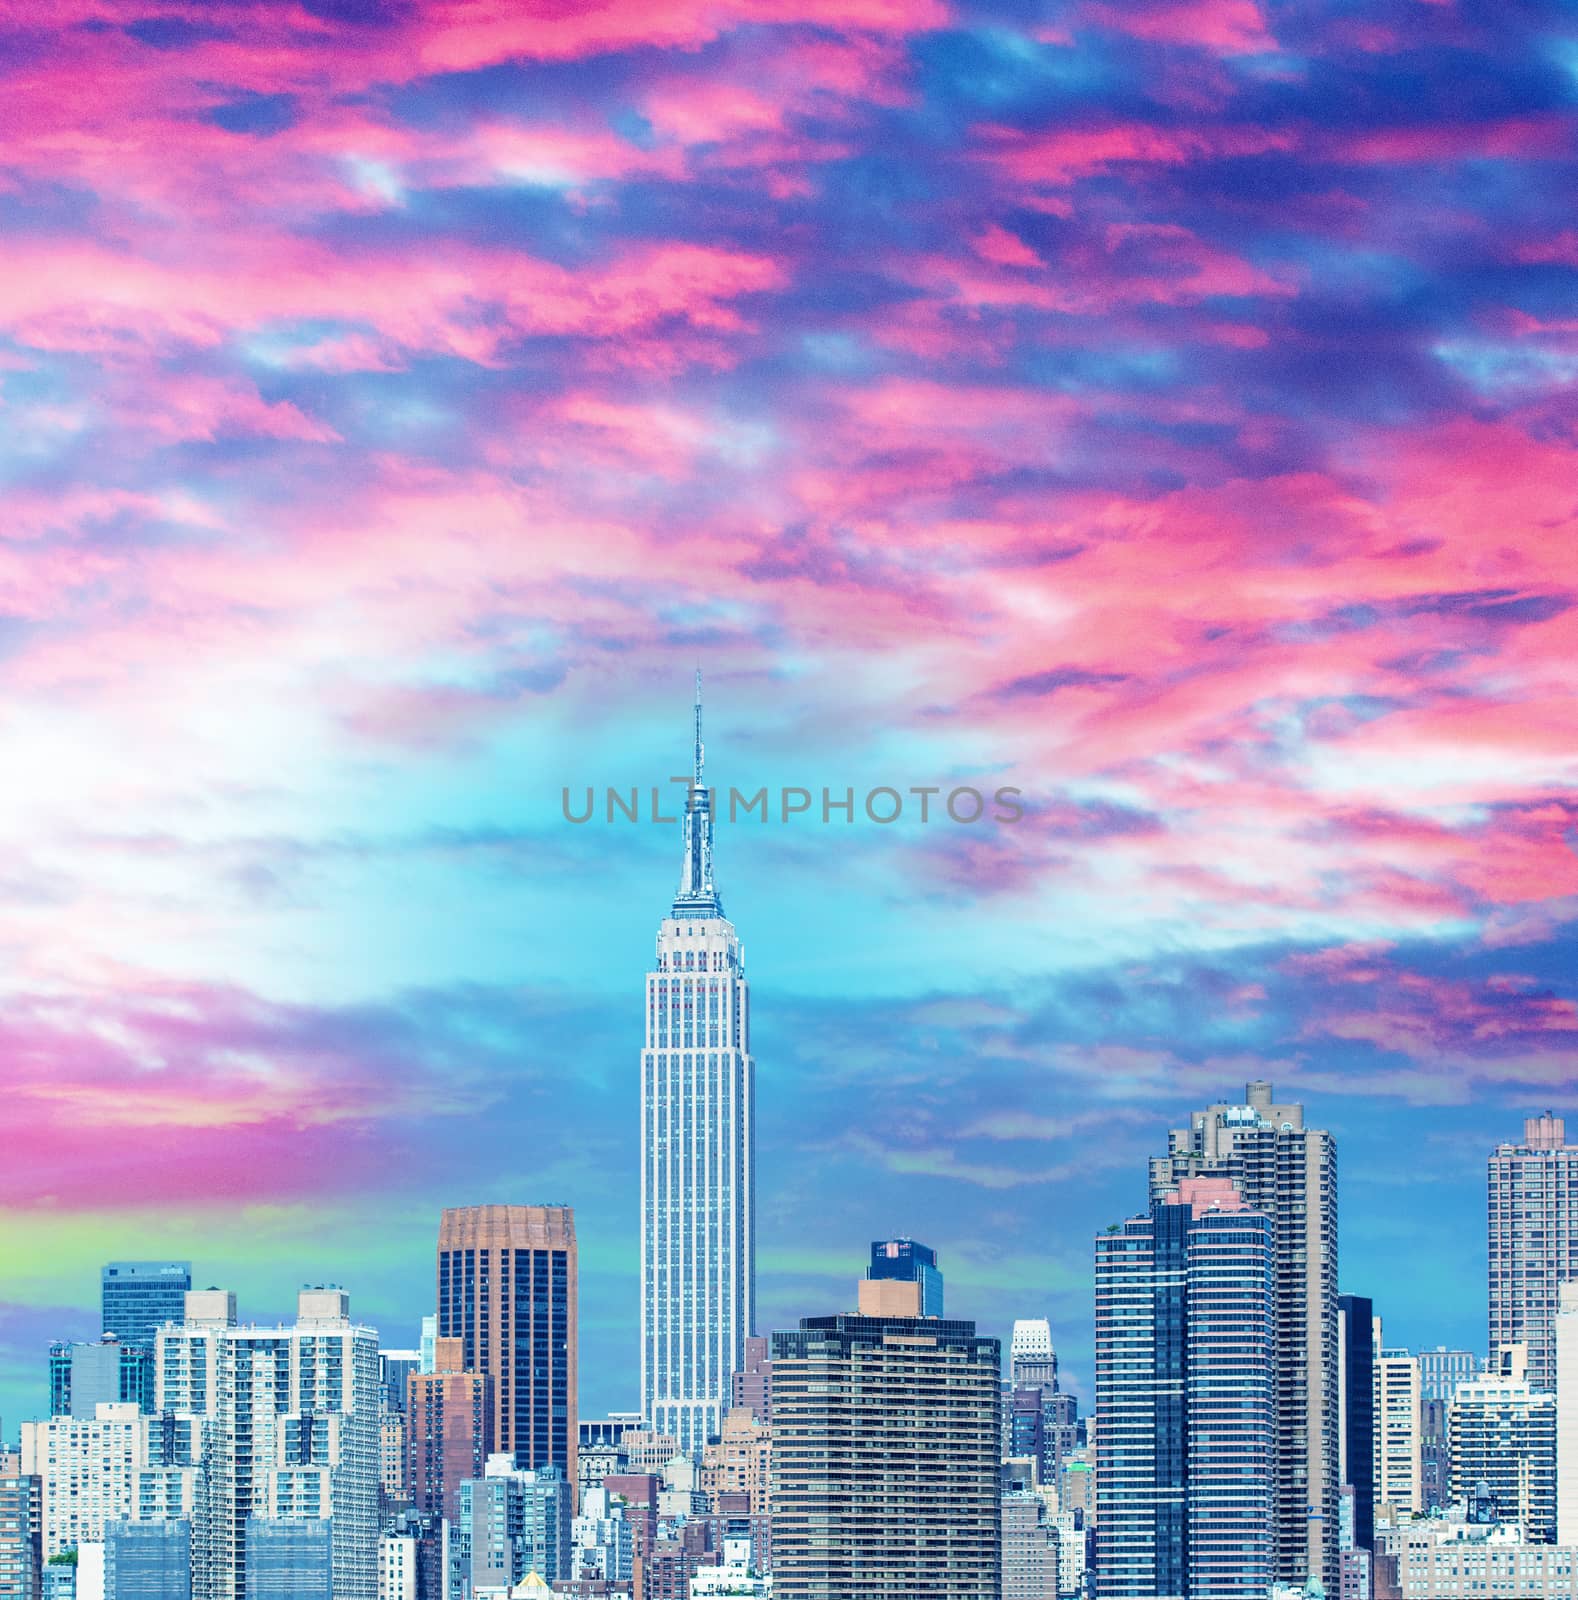 Midtown Manhattan skyline, New York City in summer season by jovannig